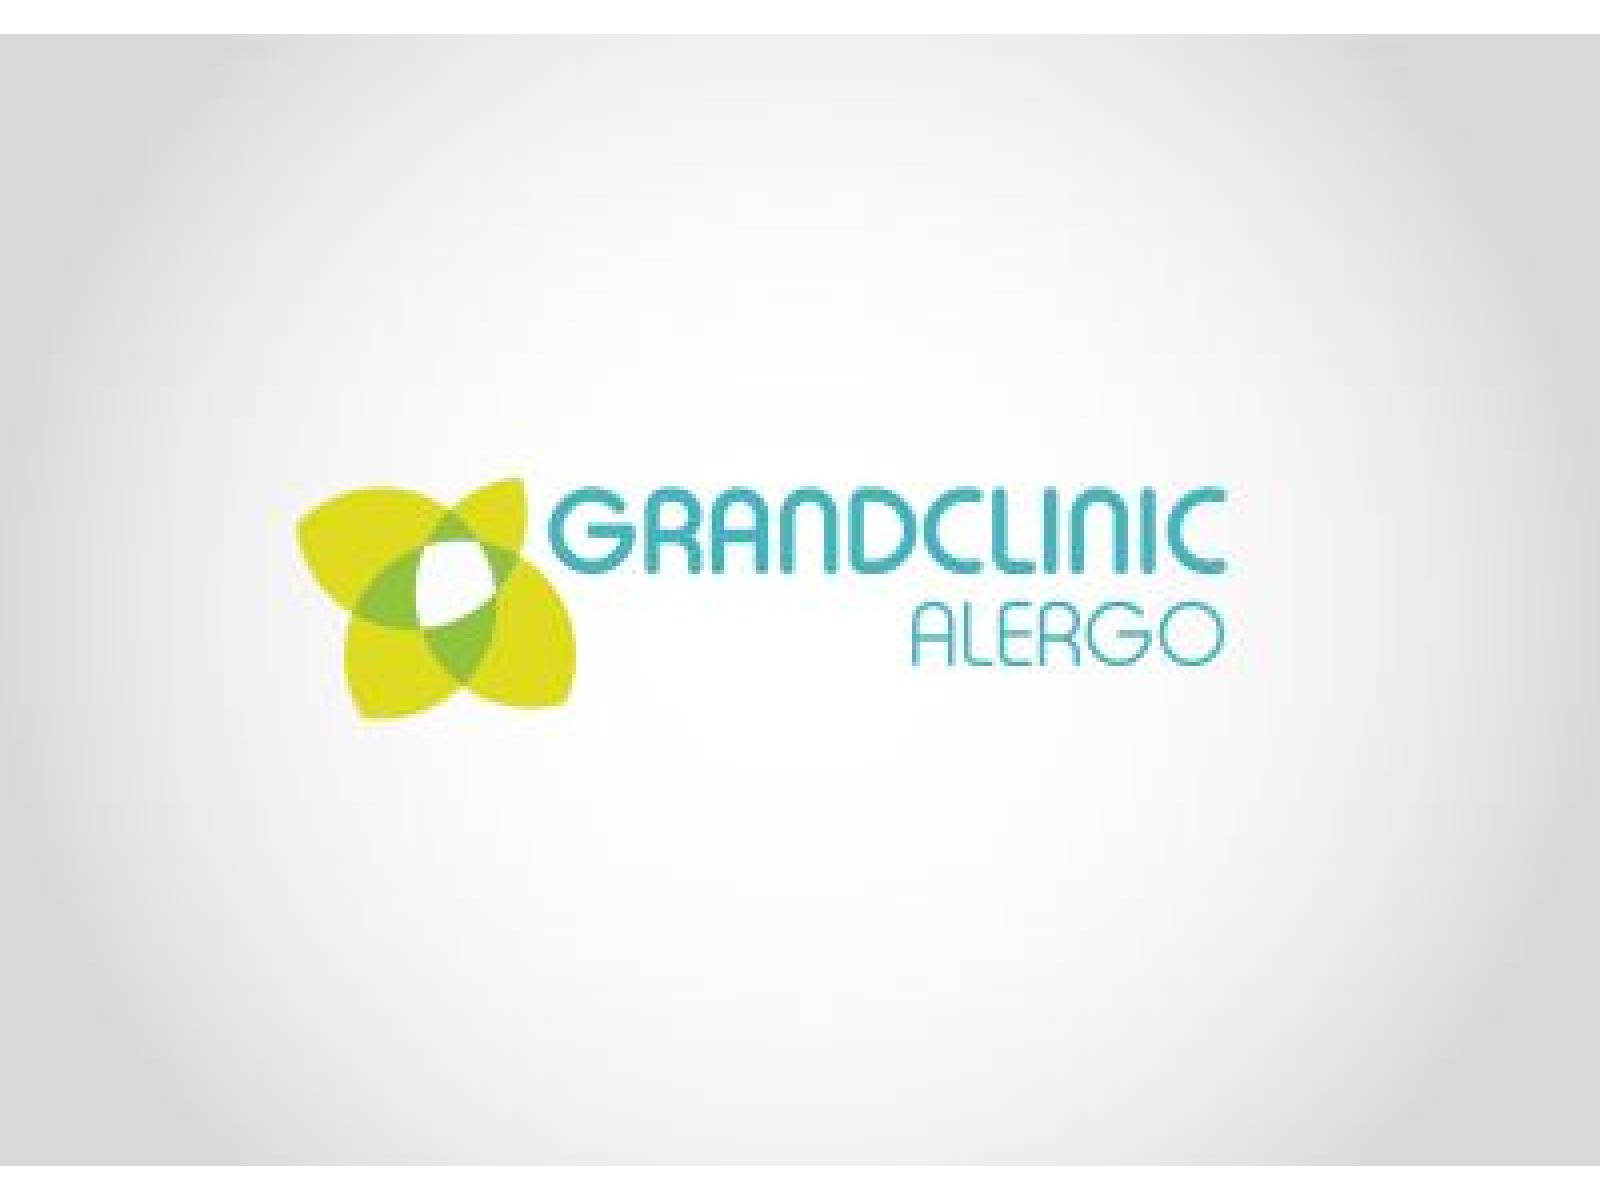 GRANDCLINIC ALERGO - Grandclinic_Alergo_logo_v.jpg